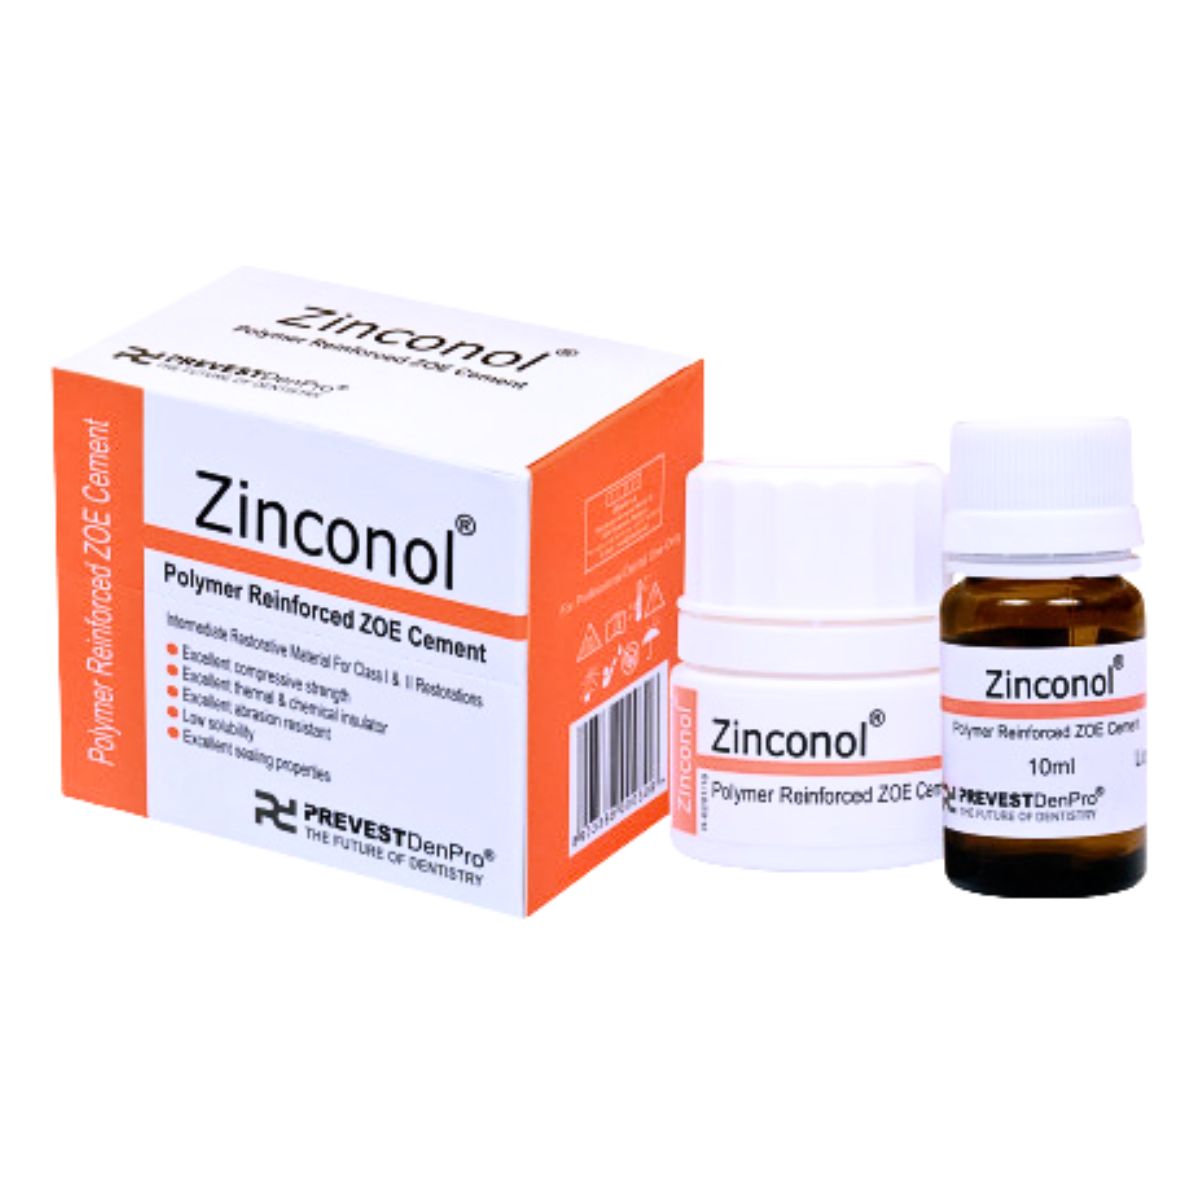 Prevest Den Pro Zinconol Polymer Reinforced Zoe Cement 10ml liquid and 20g powder